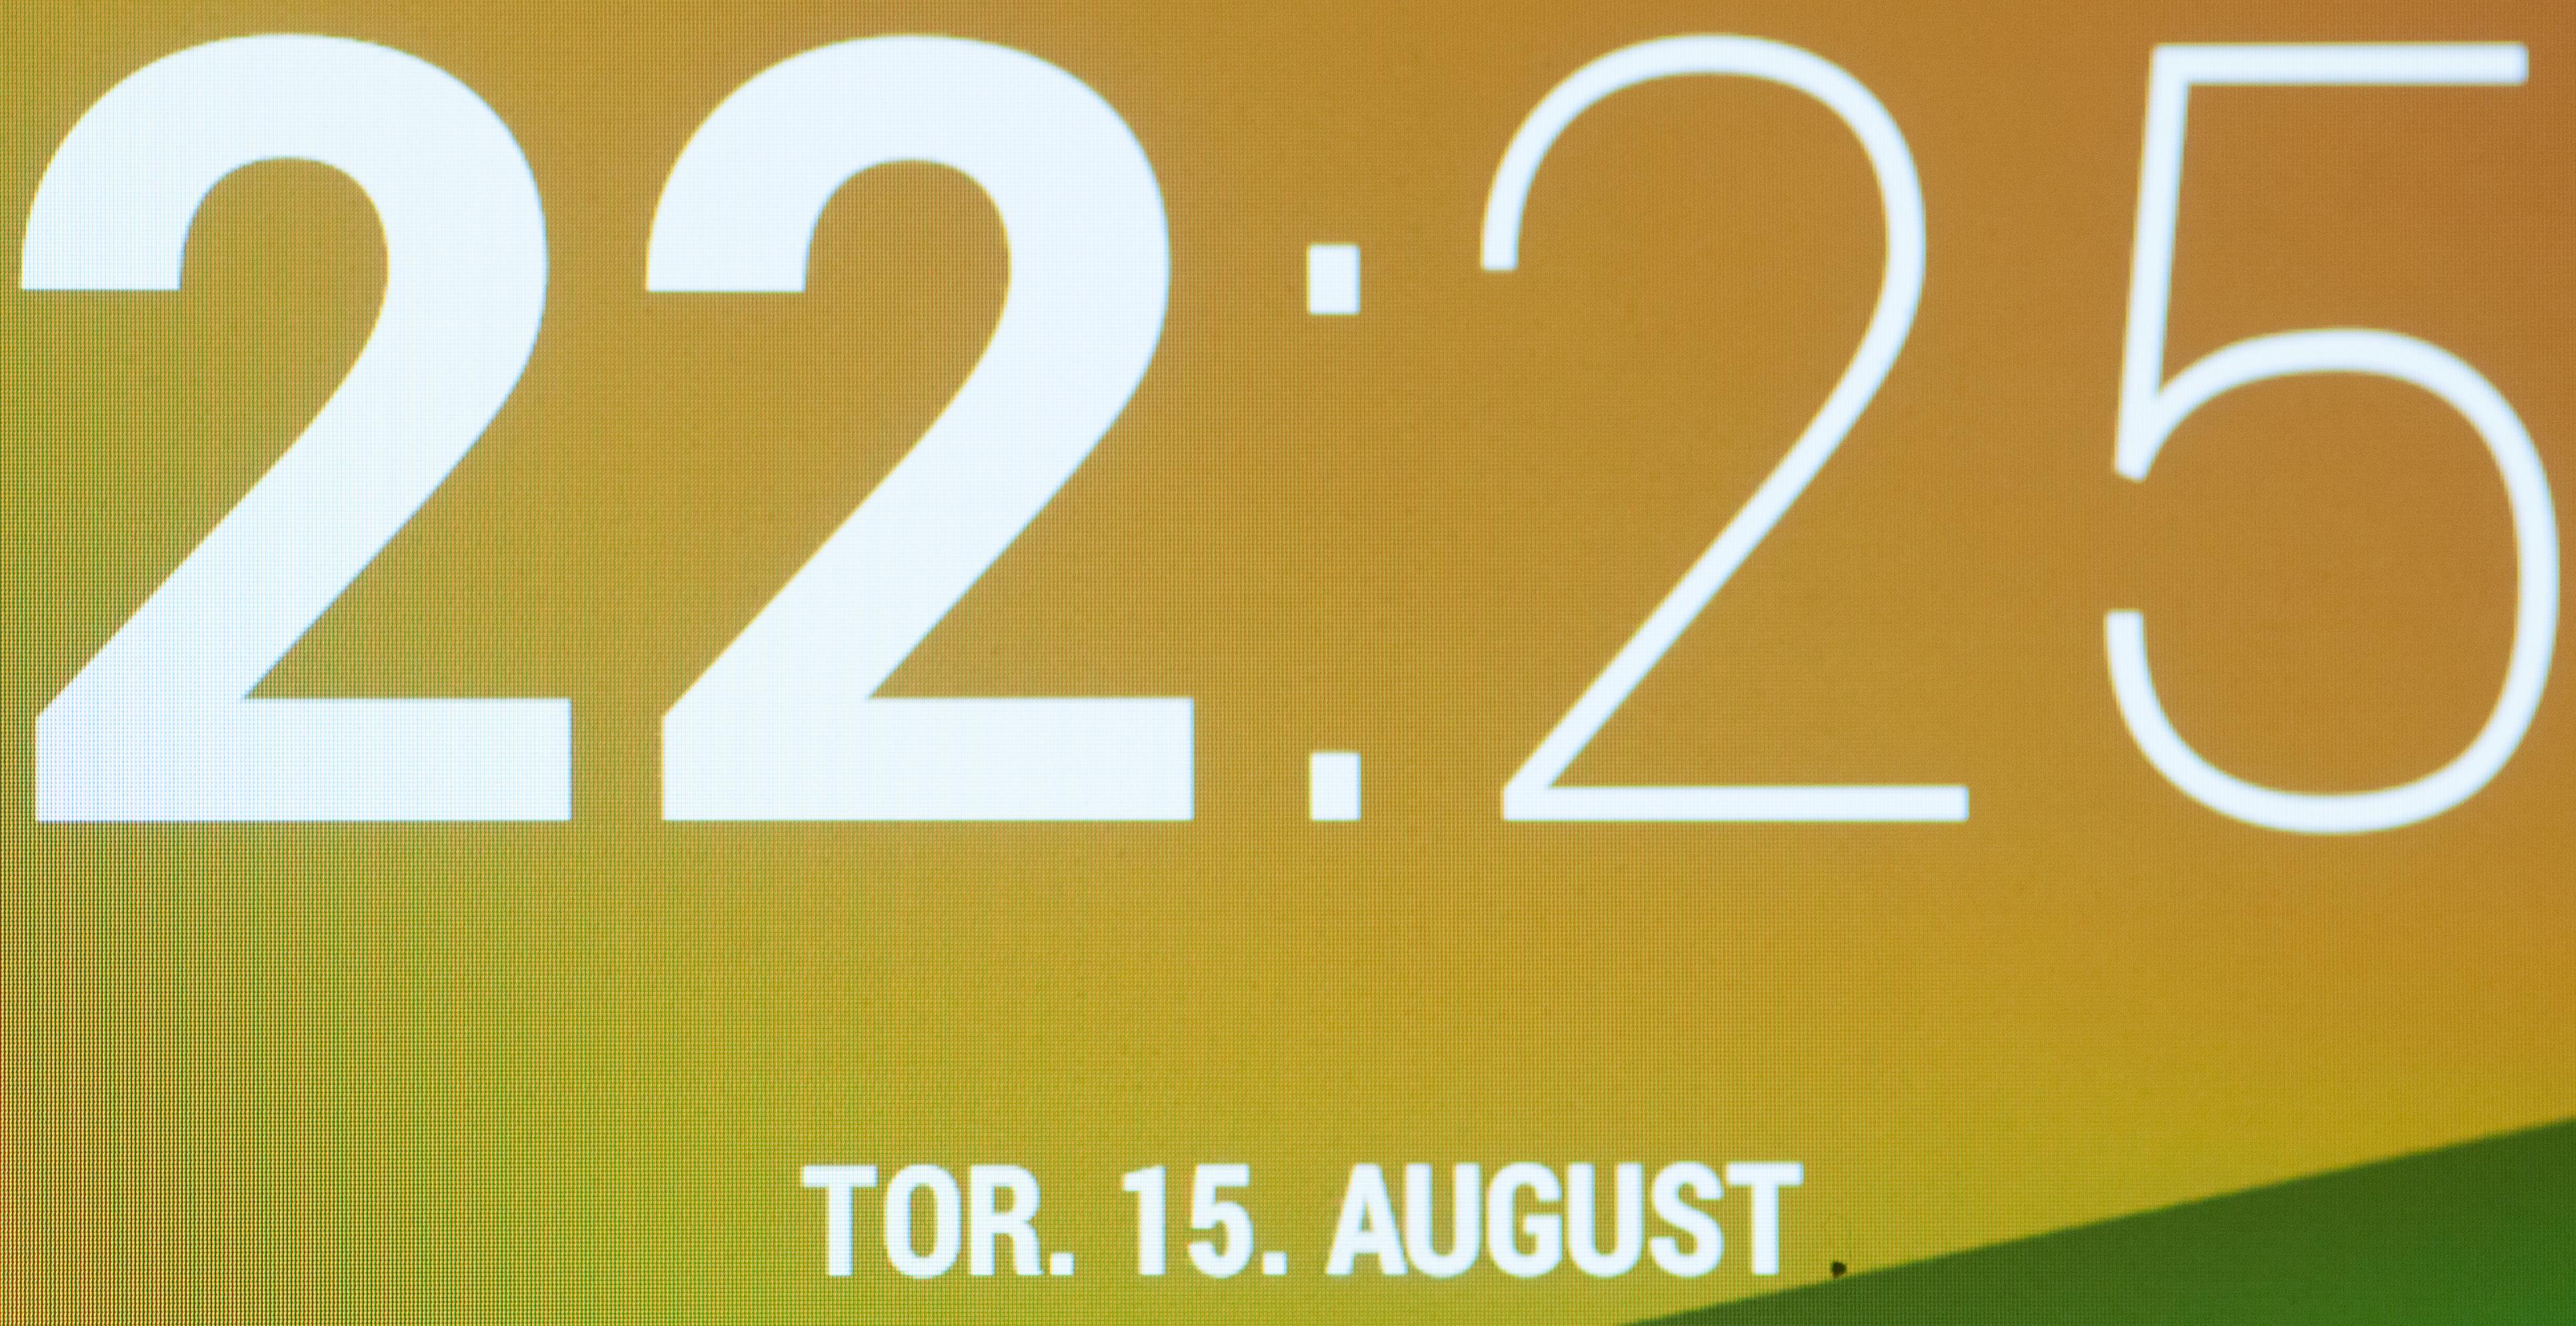 Makrobilde av skjermen i nye Nexus 7.Foto: Finn Jarle Kvalheim, Amobil.no